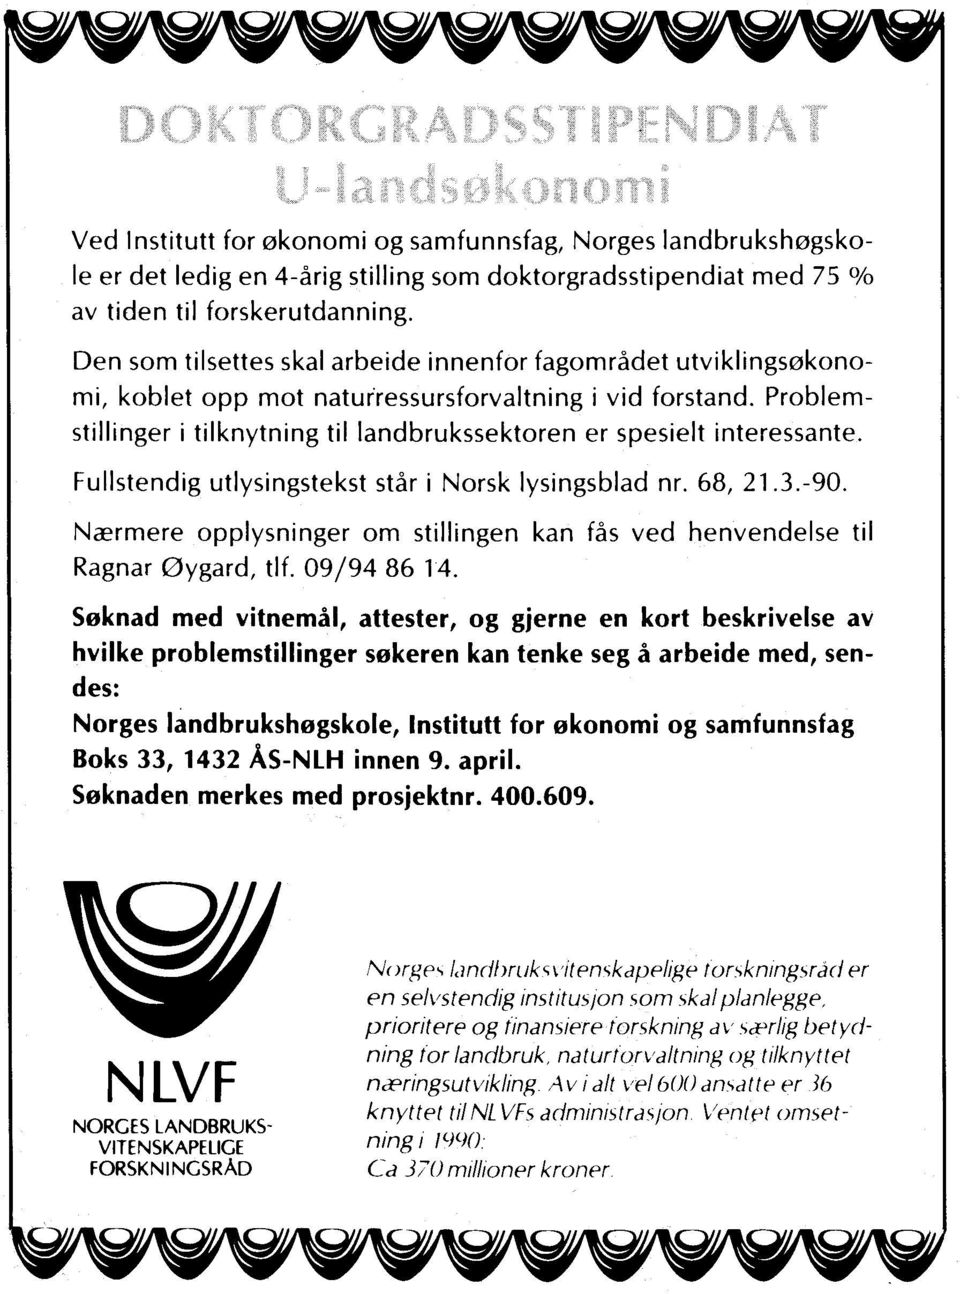 Problemstillinger i tilknytning til landbrukssektoren er spesielt interessante. Fullstendig utlysingstekst står i Norsk lysingsblad nr. 68, 21.3.-90.